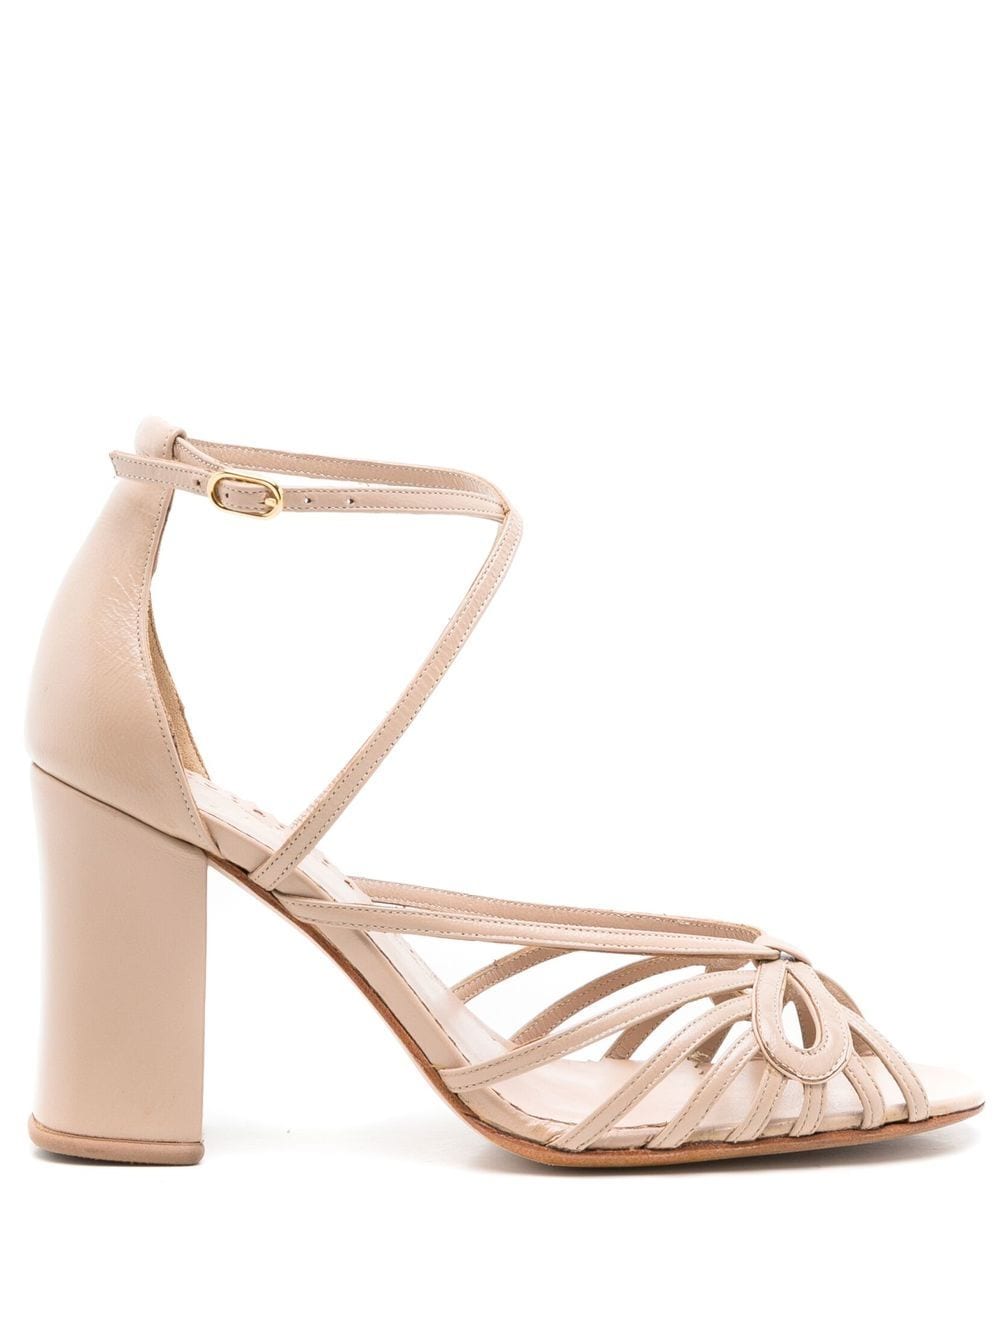 Sarah Chofakian Miuccia 75mm bow-detail sandals - Neutrals